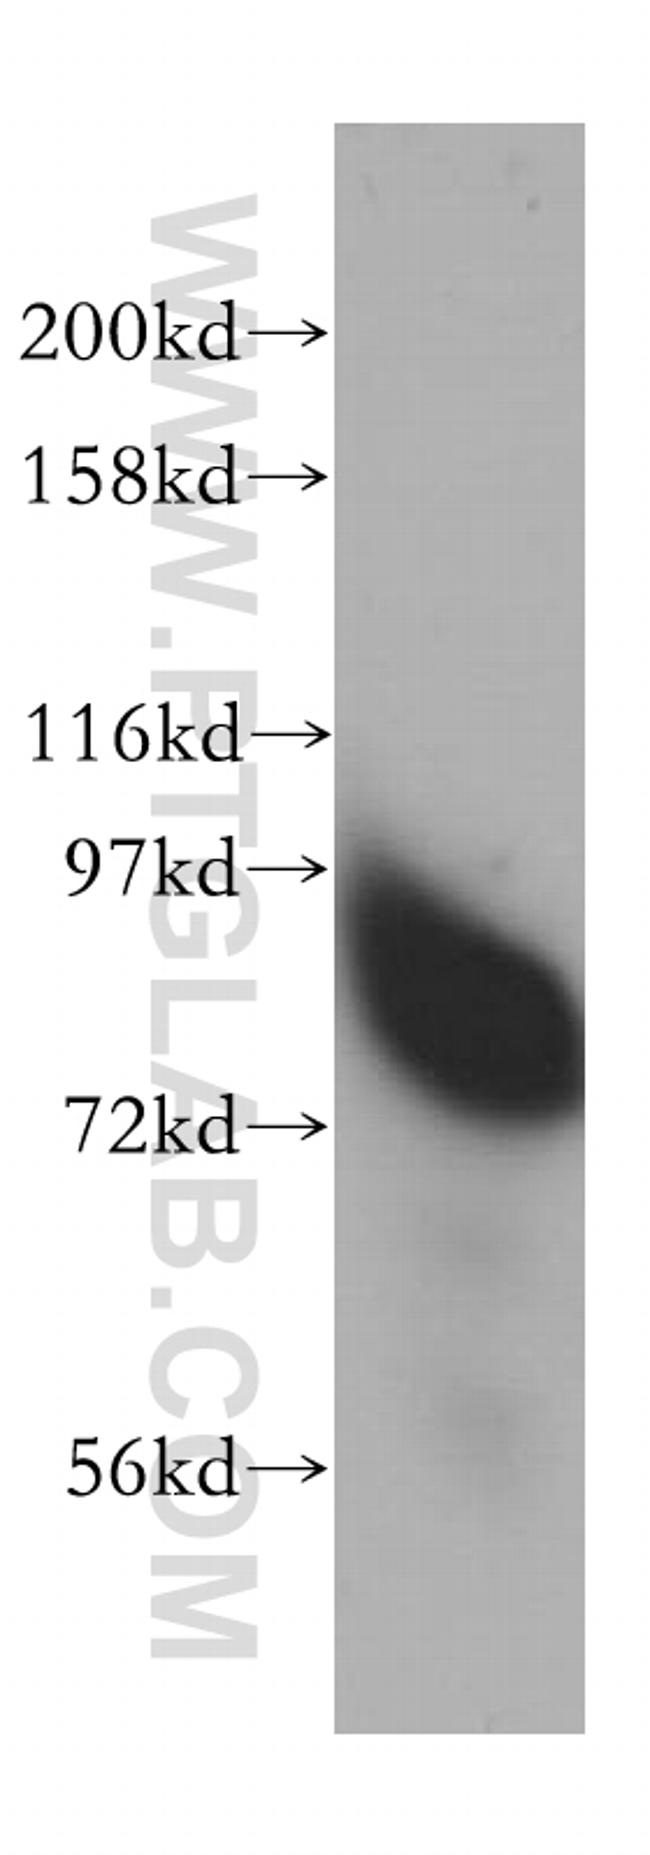 RMI1 Antibody in Western Blot (WB)